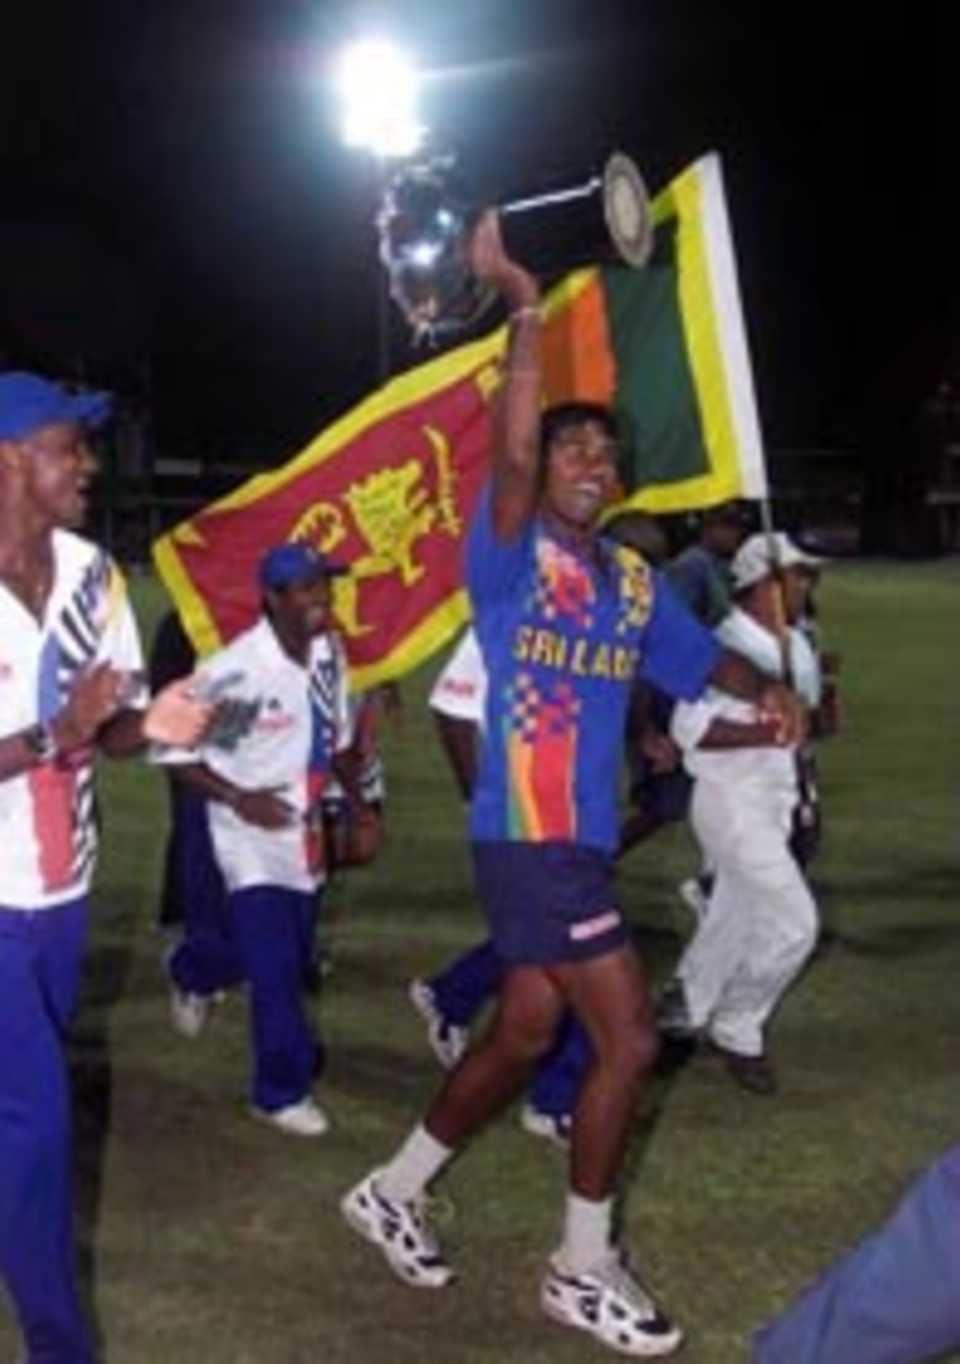 Sri Lanka celebrates, Australia v Sri Lanka, Aiwa Cup Final, 1999/00